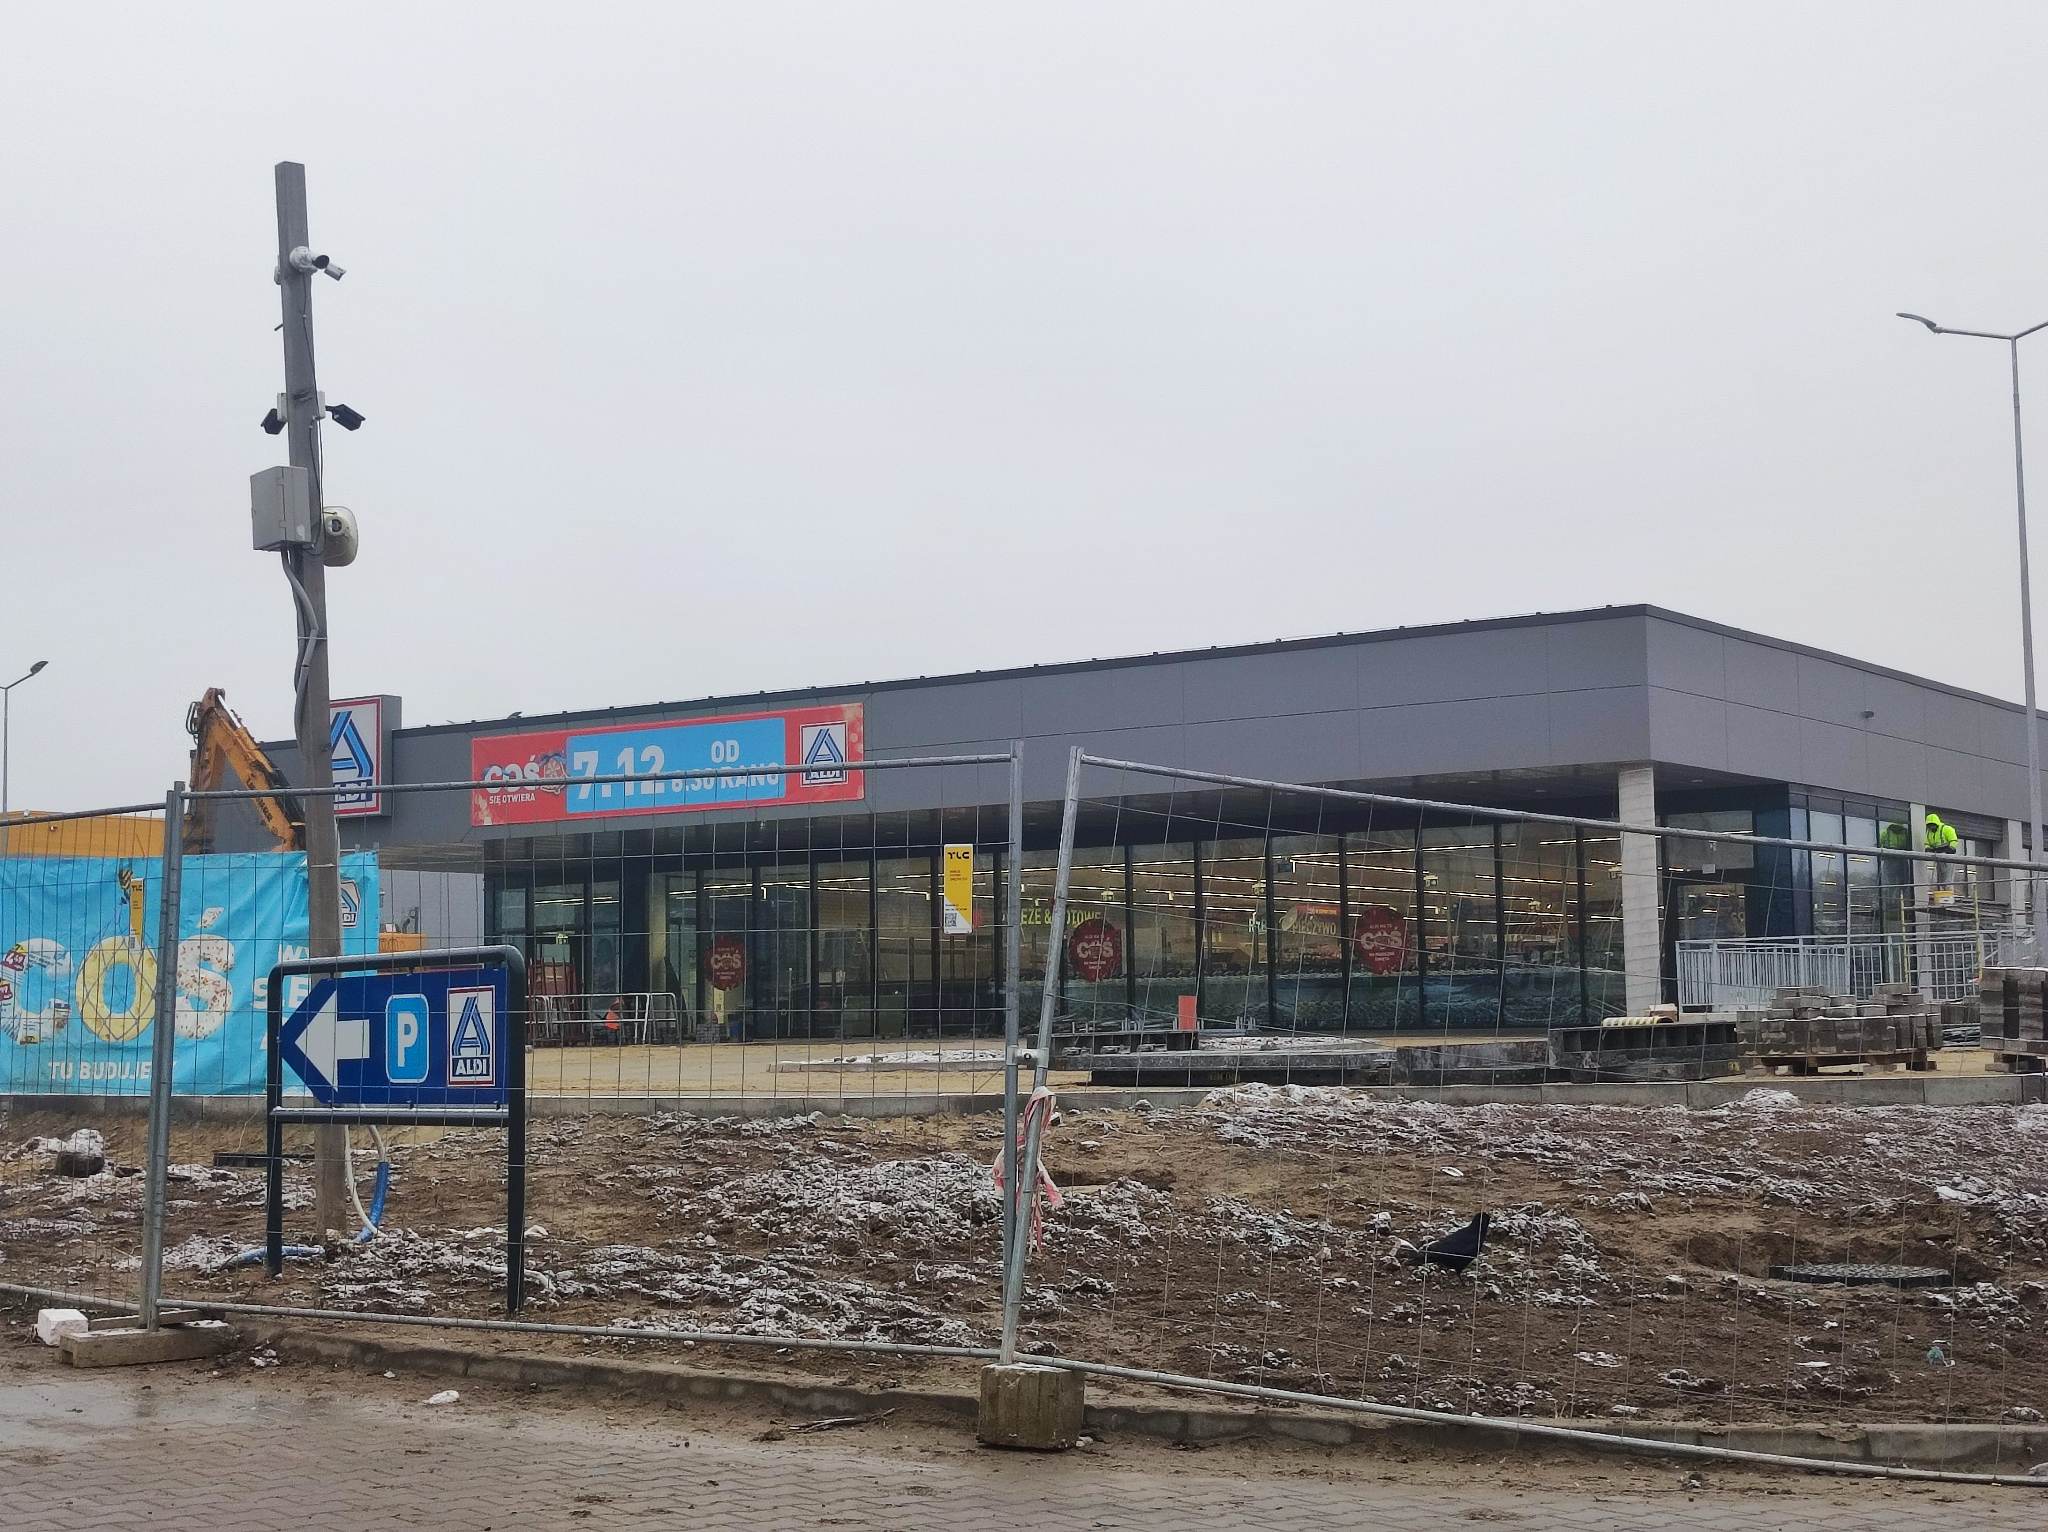 Dopiero otworzyli sklep w Świdniku, szykują się do otwarcia kolejnego w Lublinie. Chcą mieć tysiąc marketów (zdjęcia)